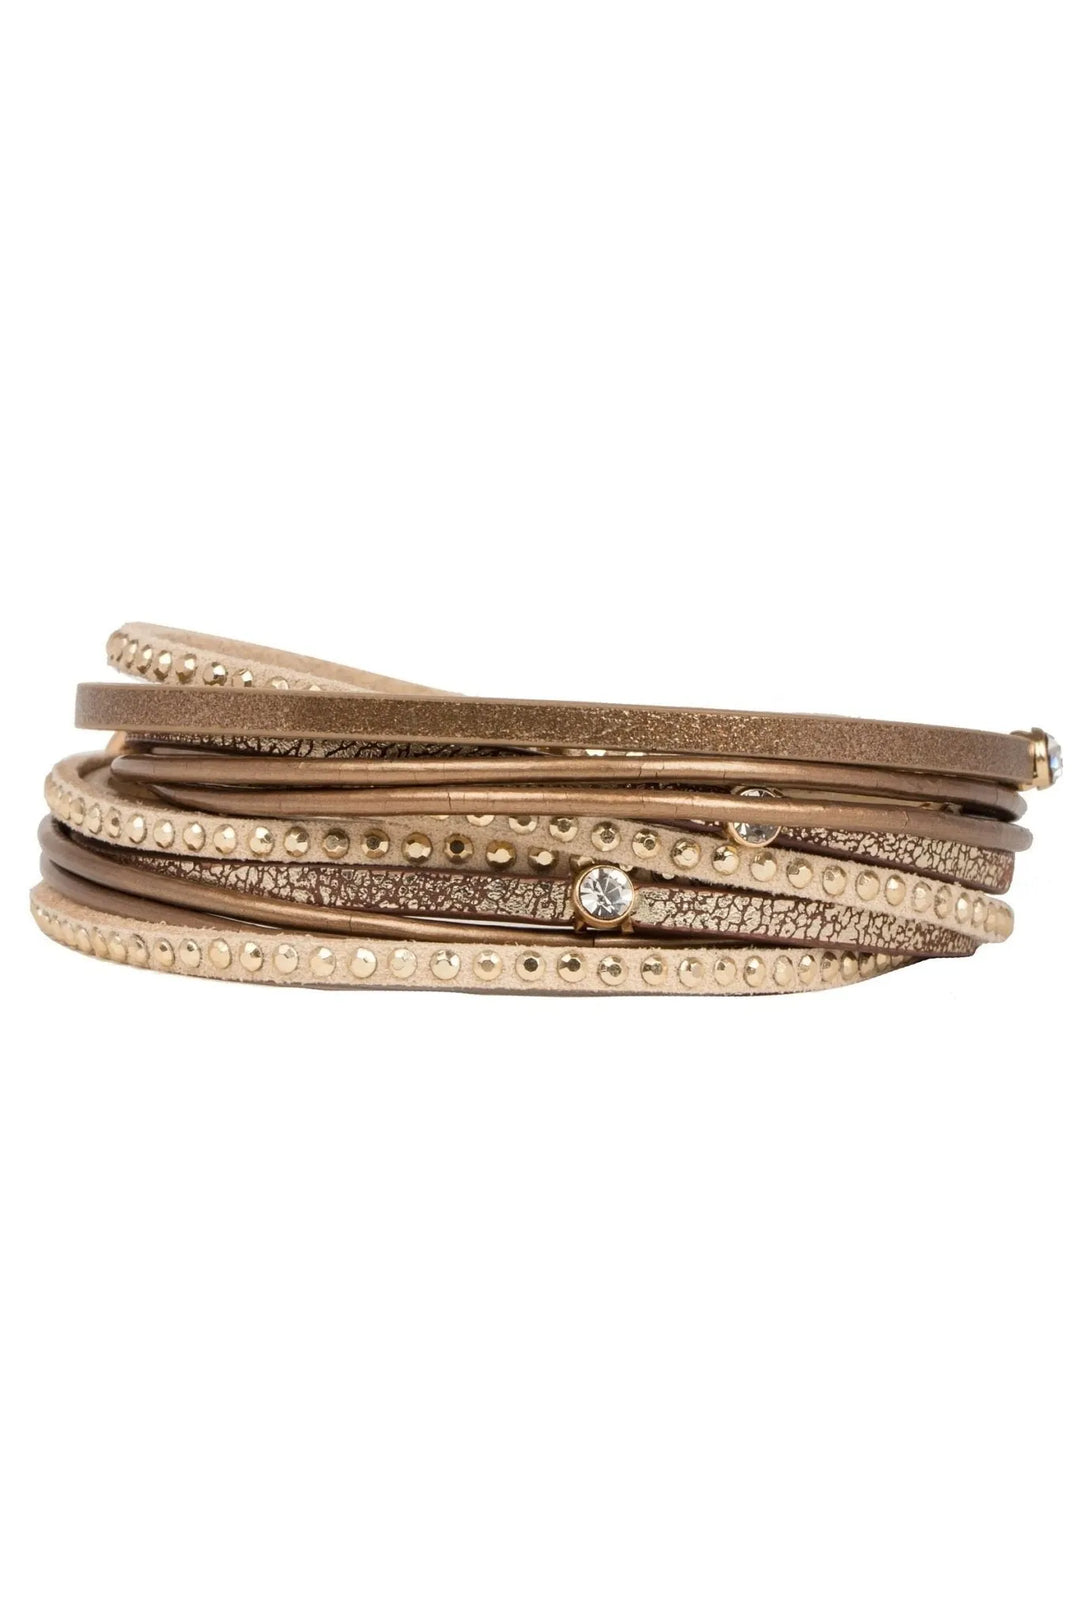 Segovia Double Wrap Leather Bracelet Sienna